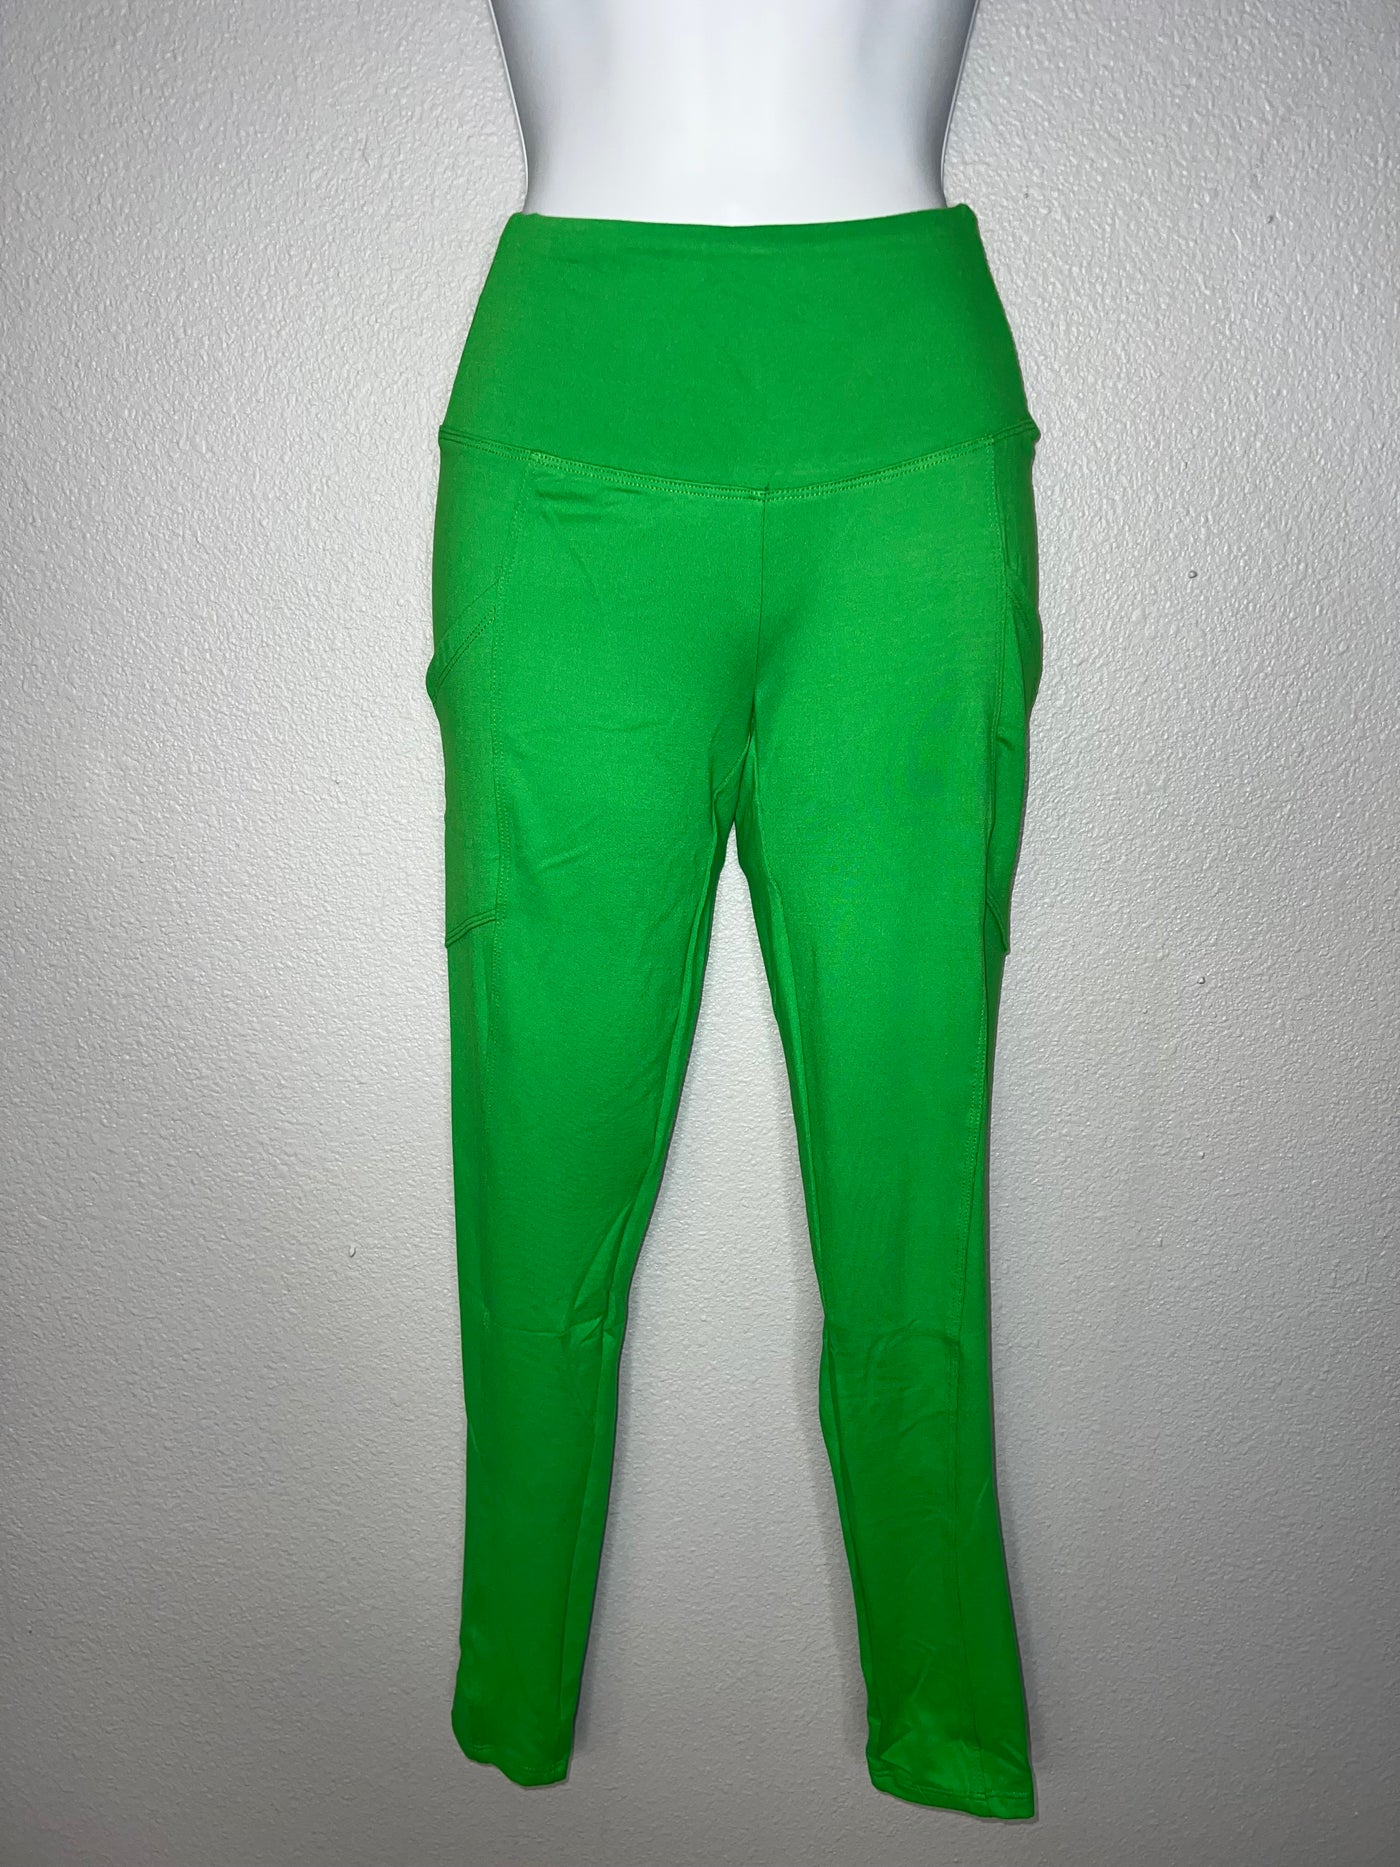 Neon Green Leggings w/ Pockets